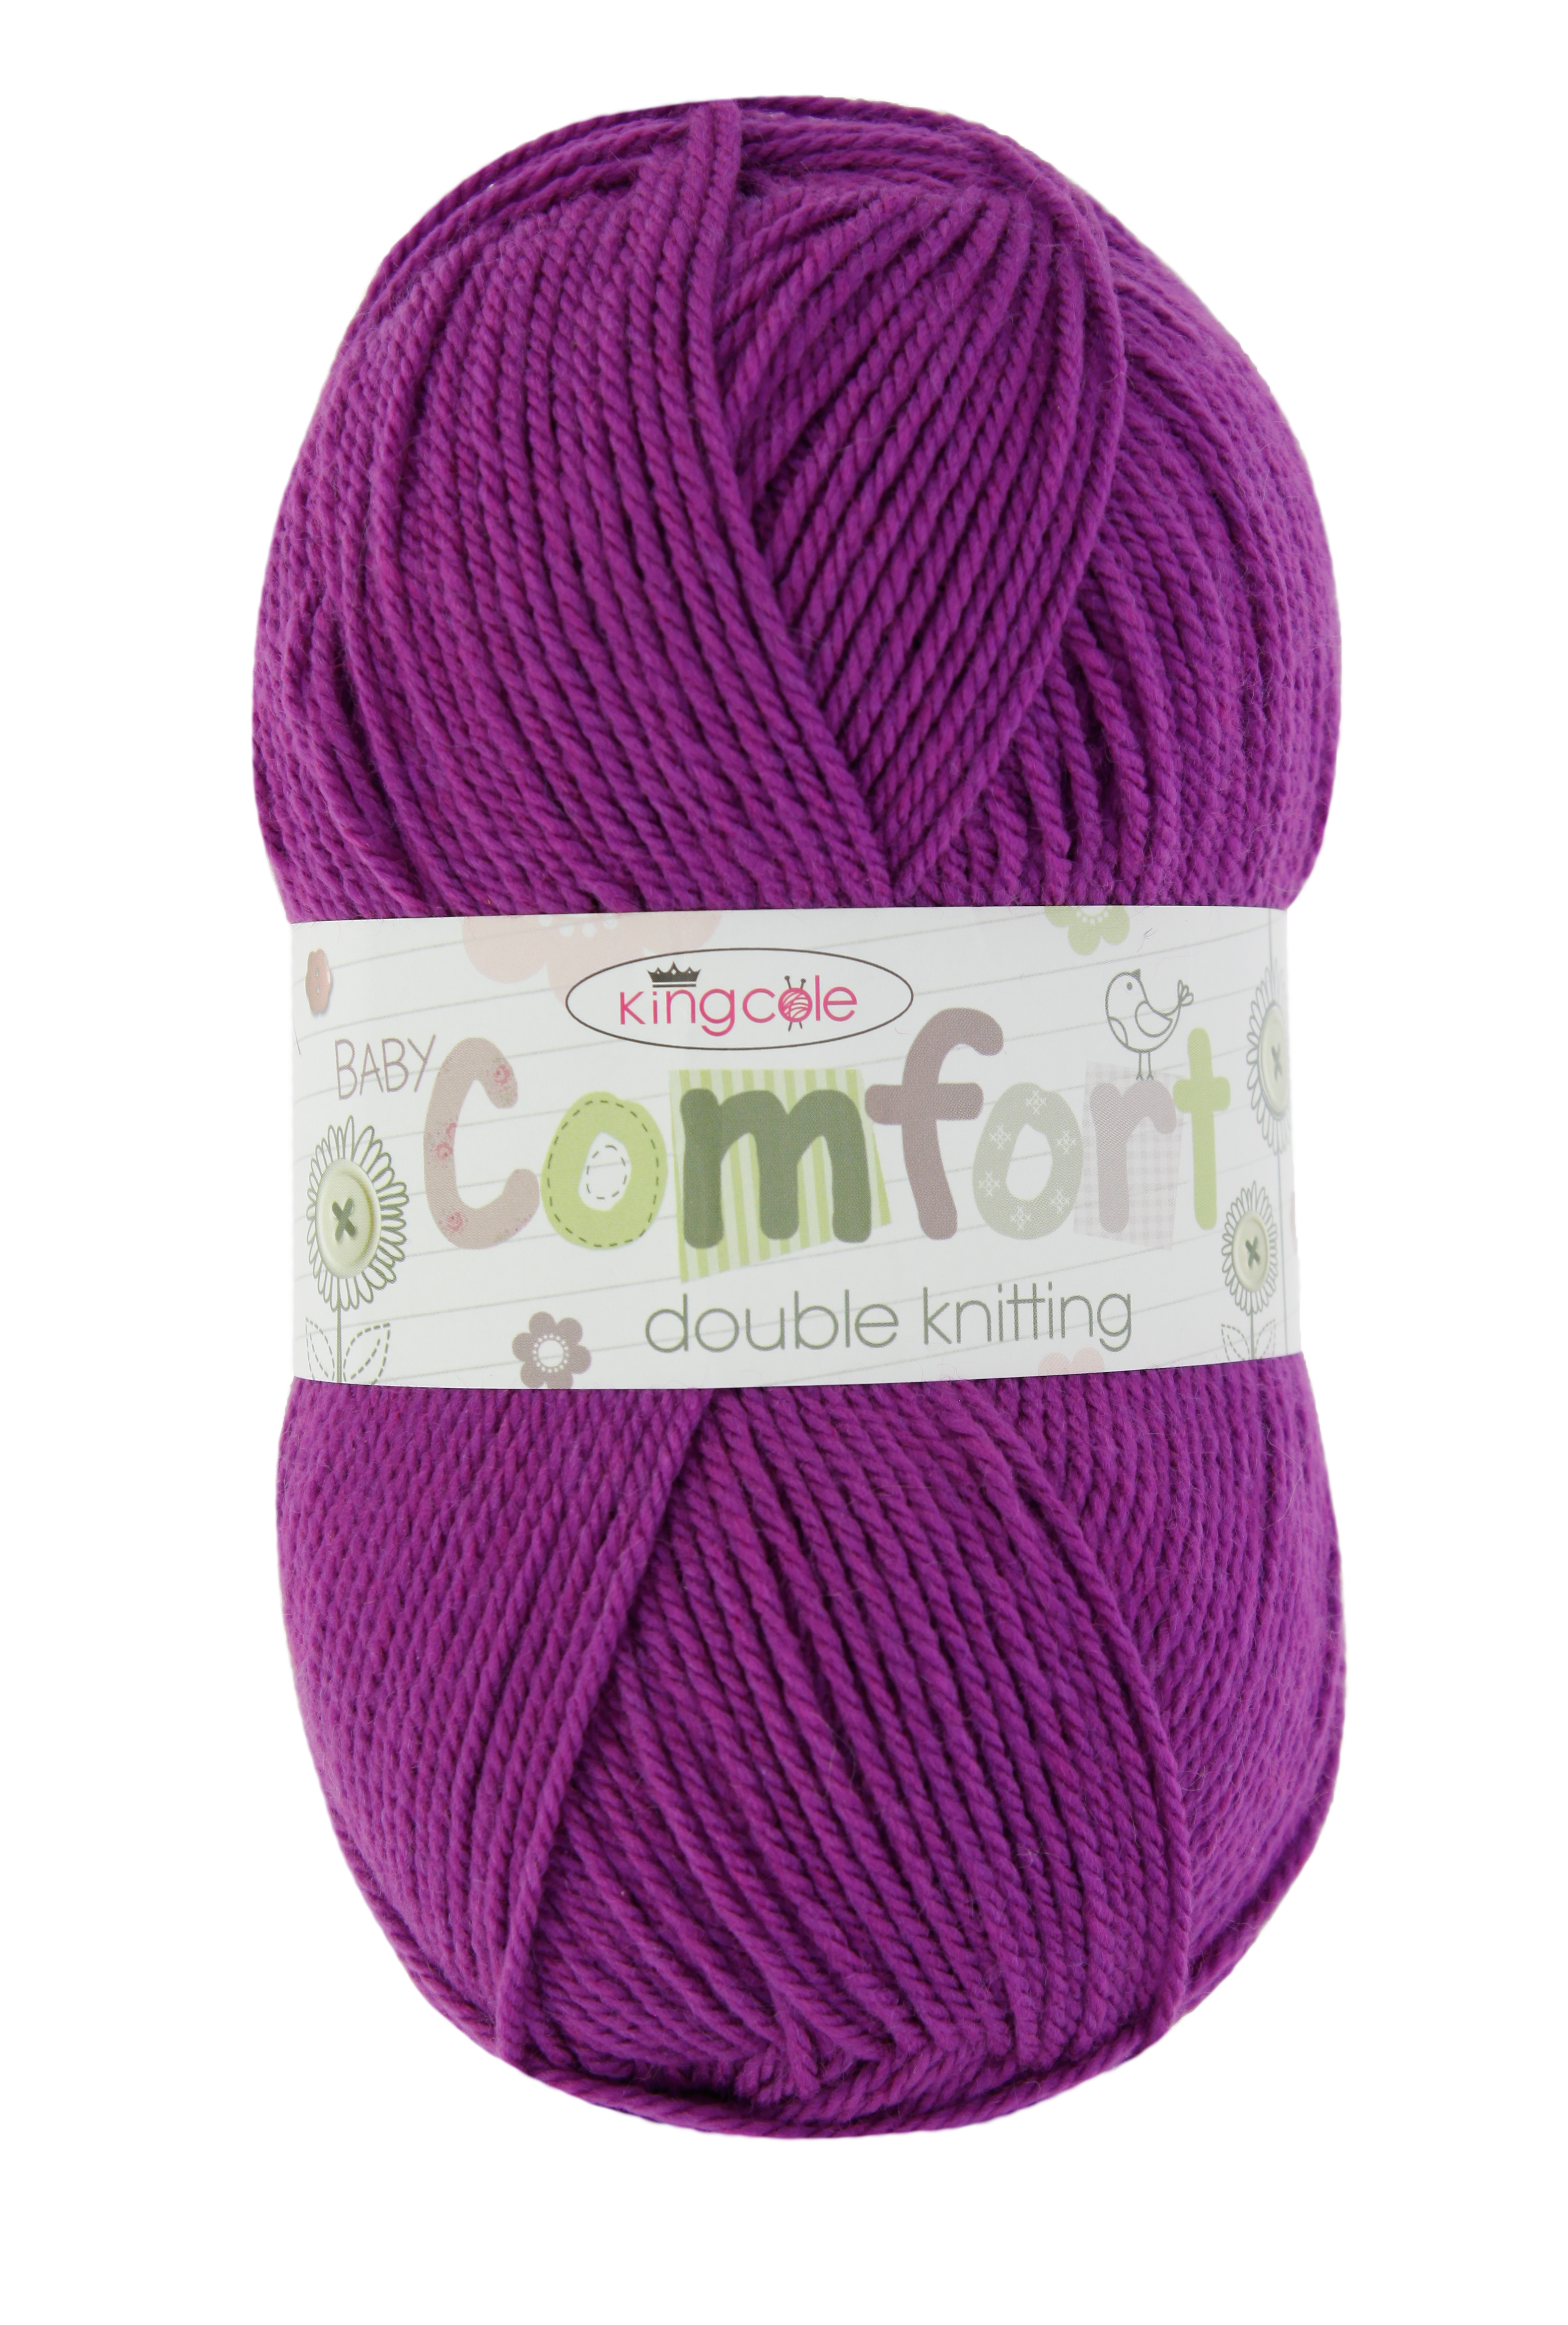 baby dk yarn cuddles multi  soft and snuggly 1x 50g ball yarn by King Cole 